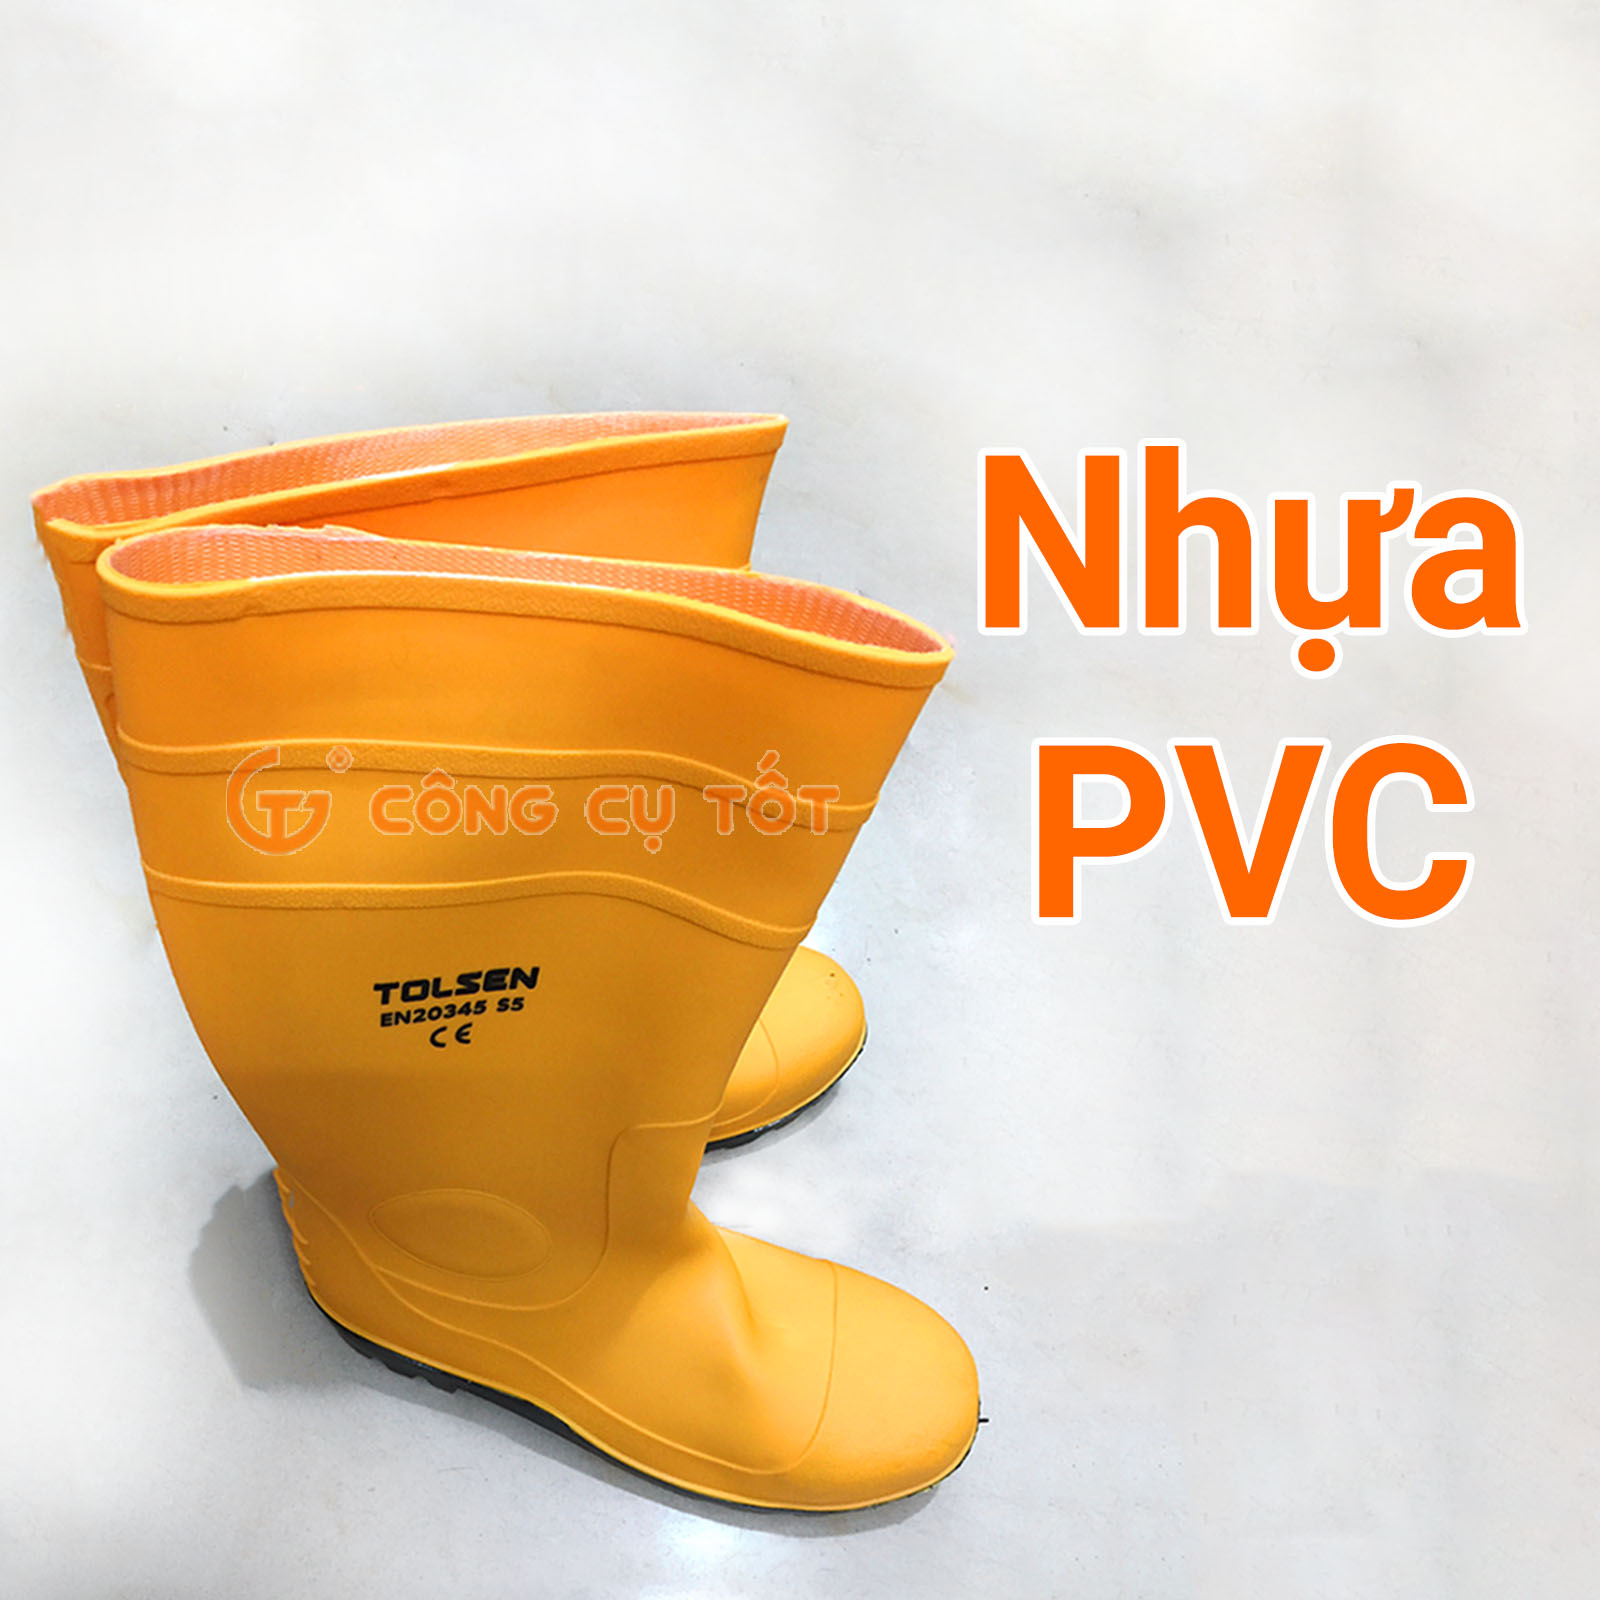 Chất liệu bằng nhựa PVC êm ái, có độ bền cao và mềm mại